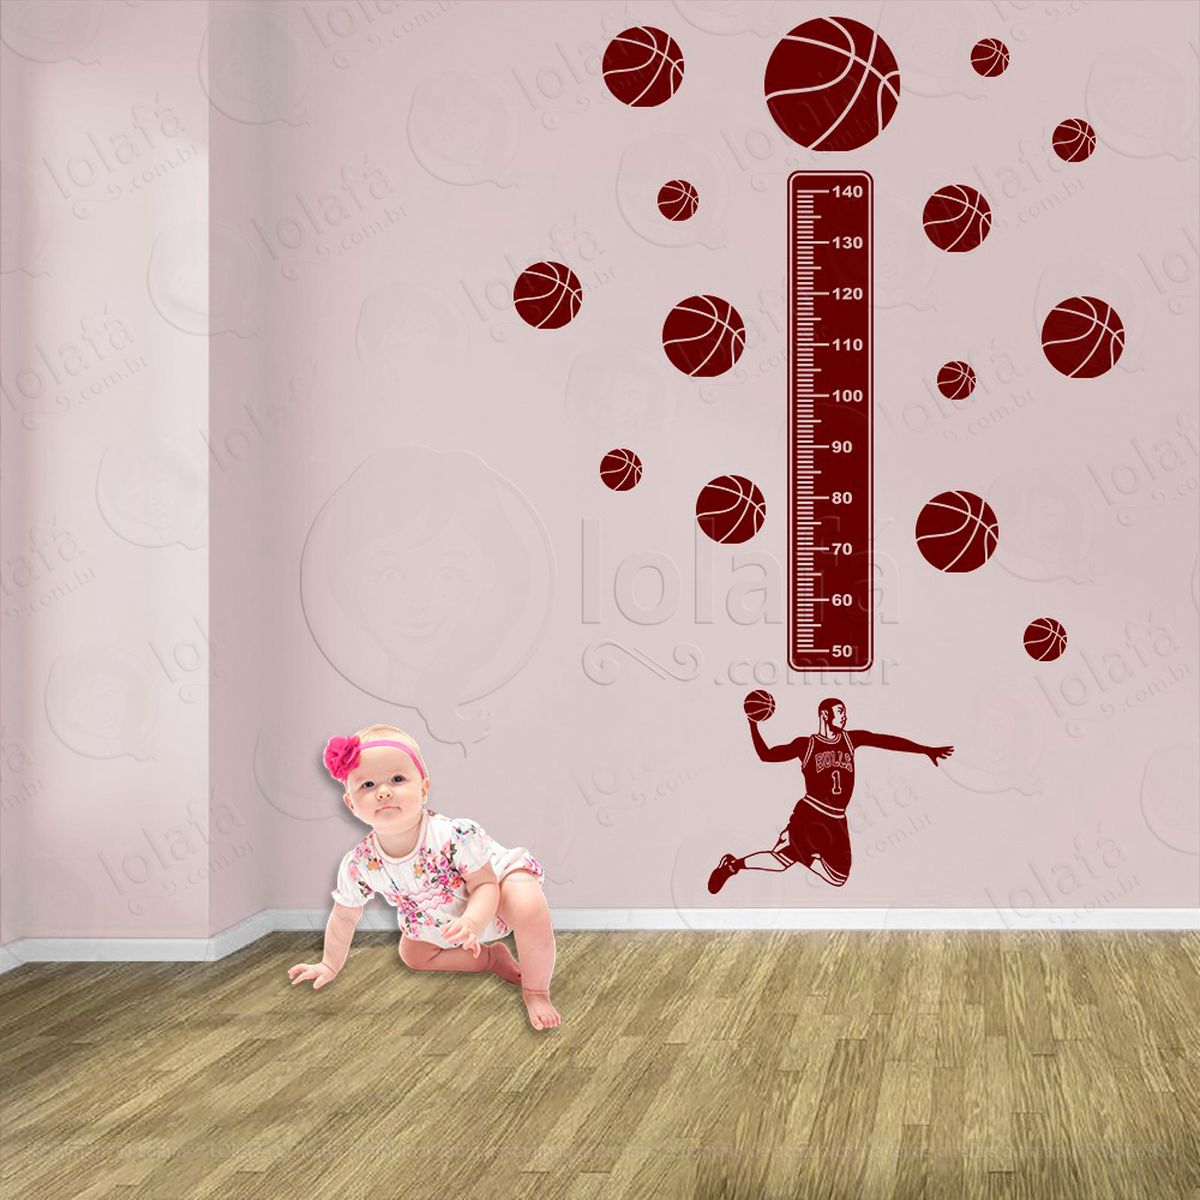 basquetebol e bolas de basquete adesivo régua de crescimento infantil, medidor de altura para quarto, porta e parede - mod:260